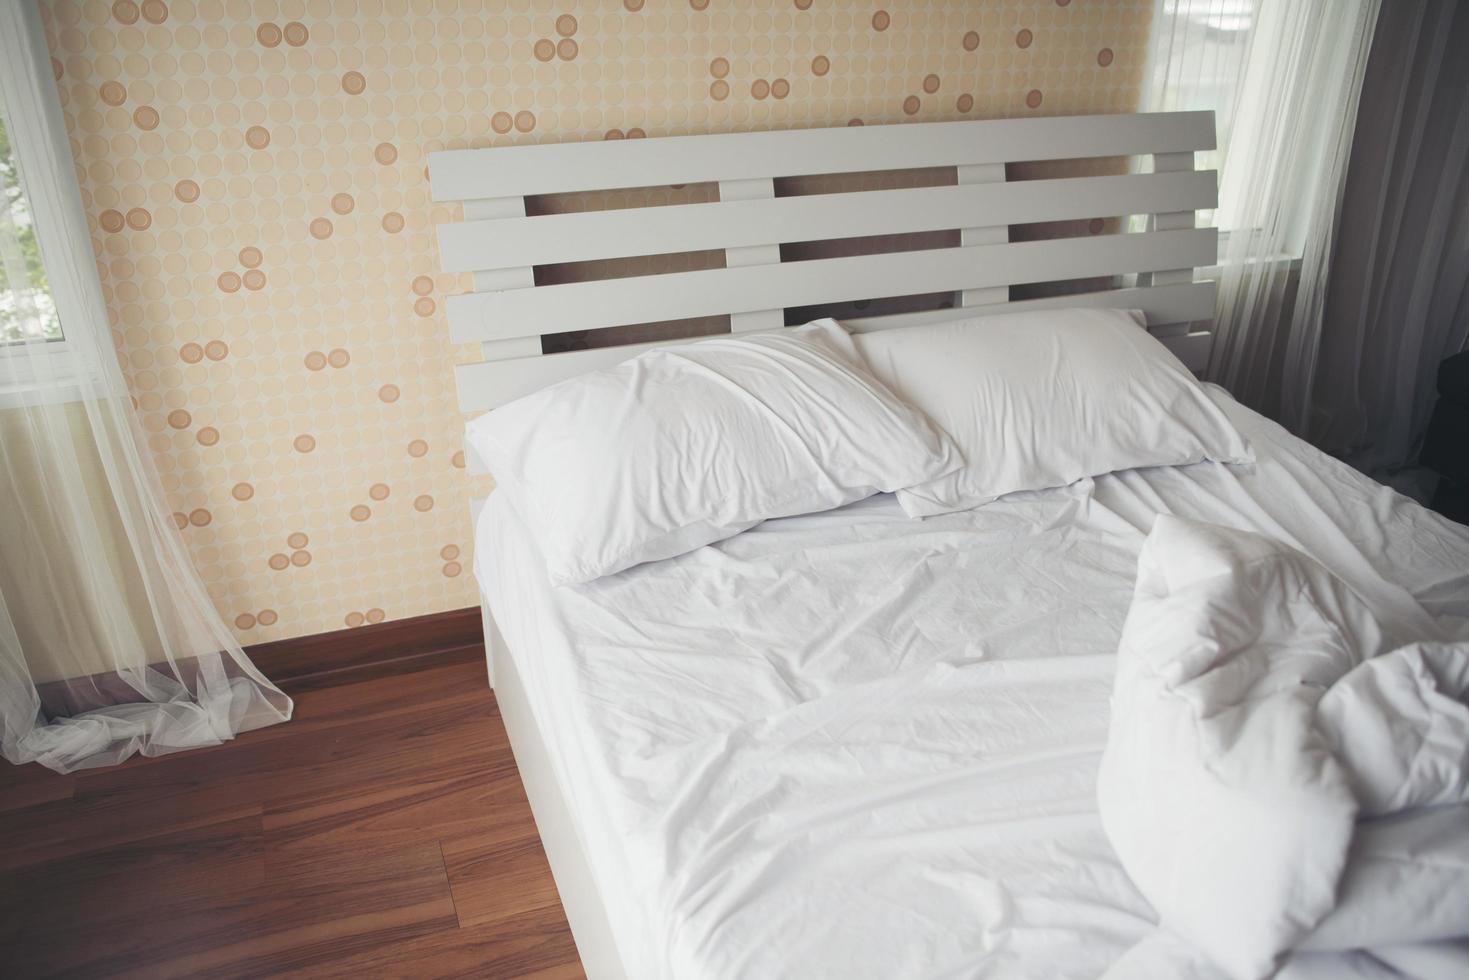 sábanas arrugadas en el dormitorio foto